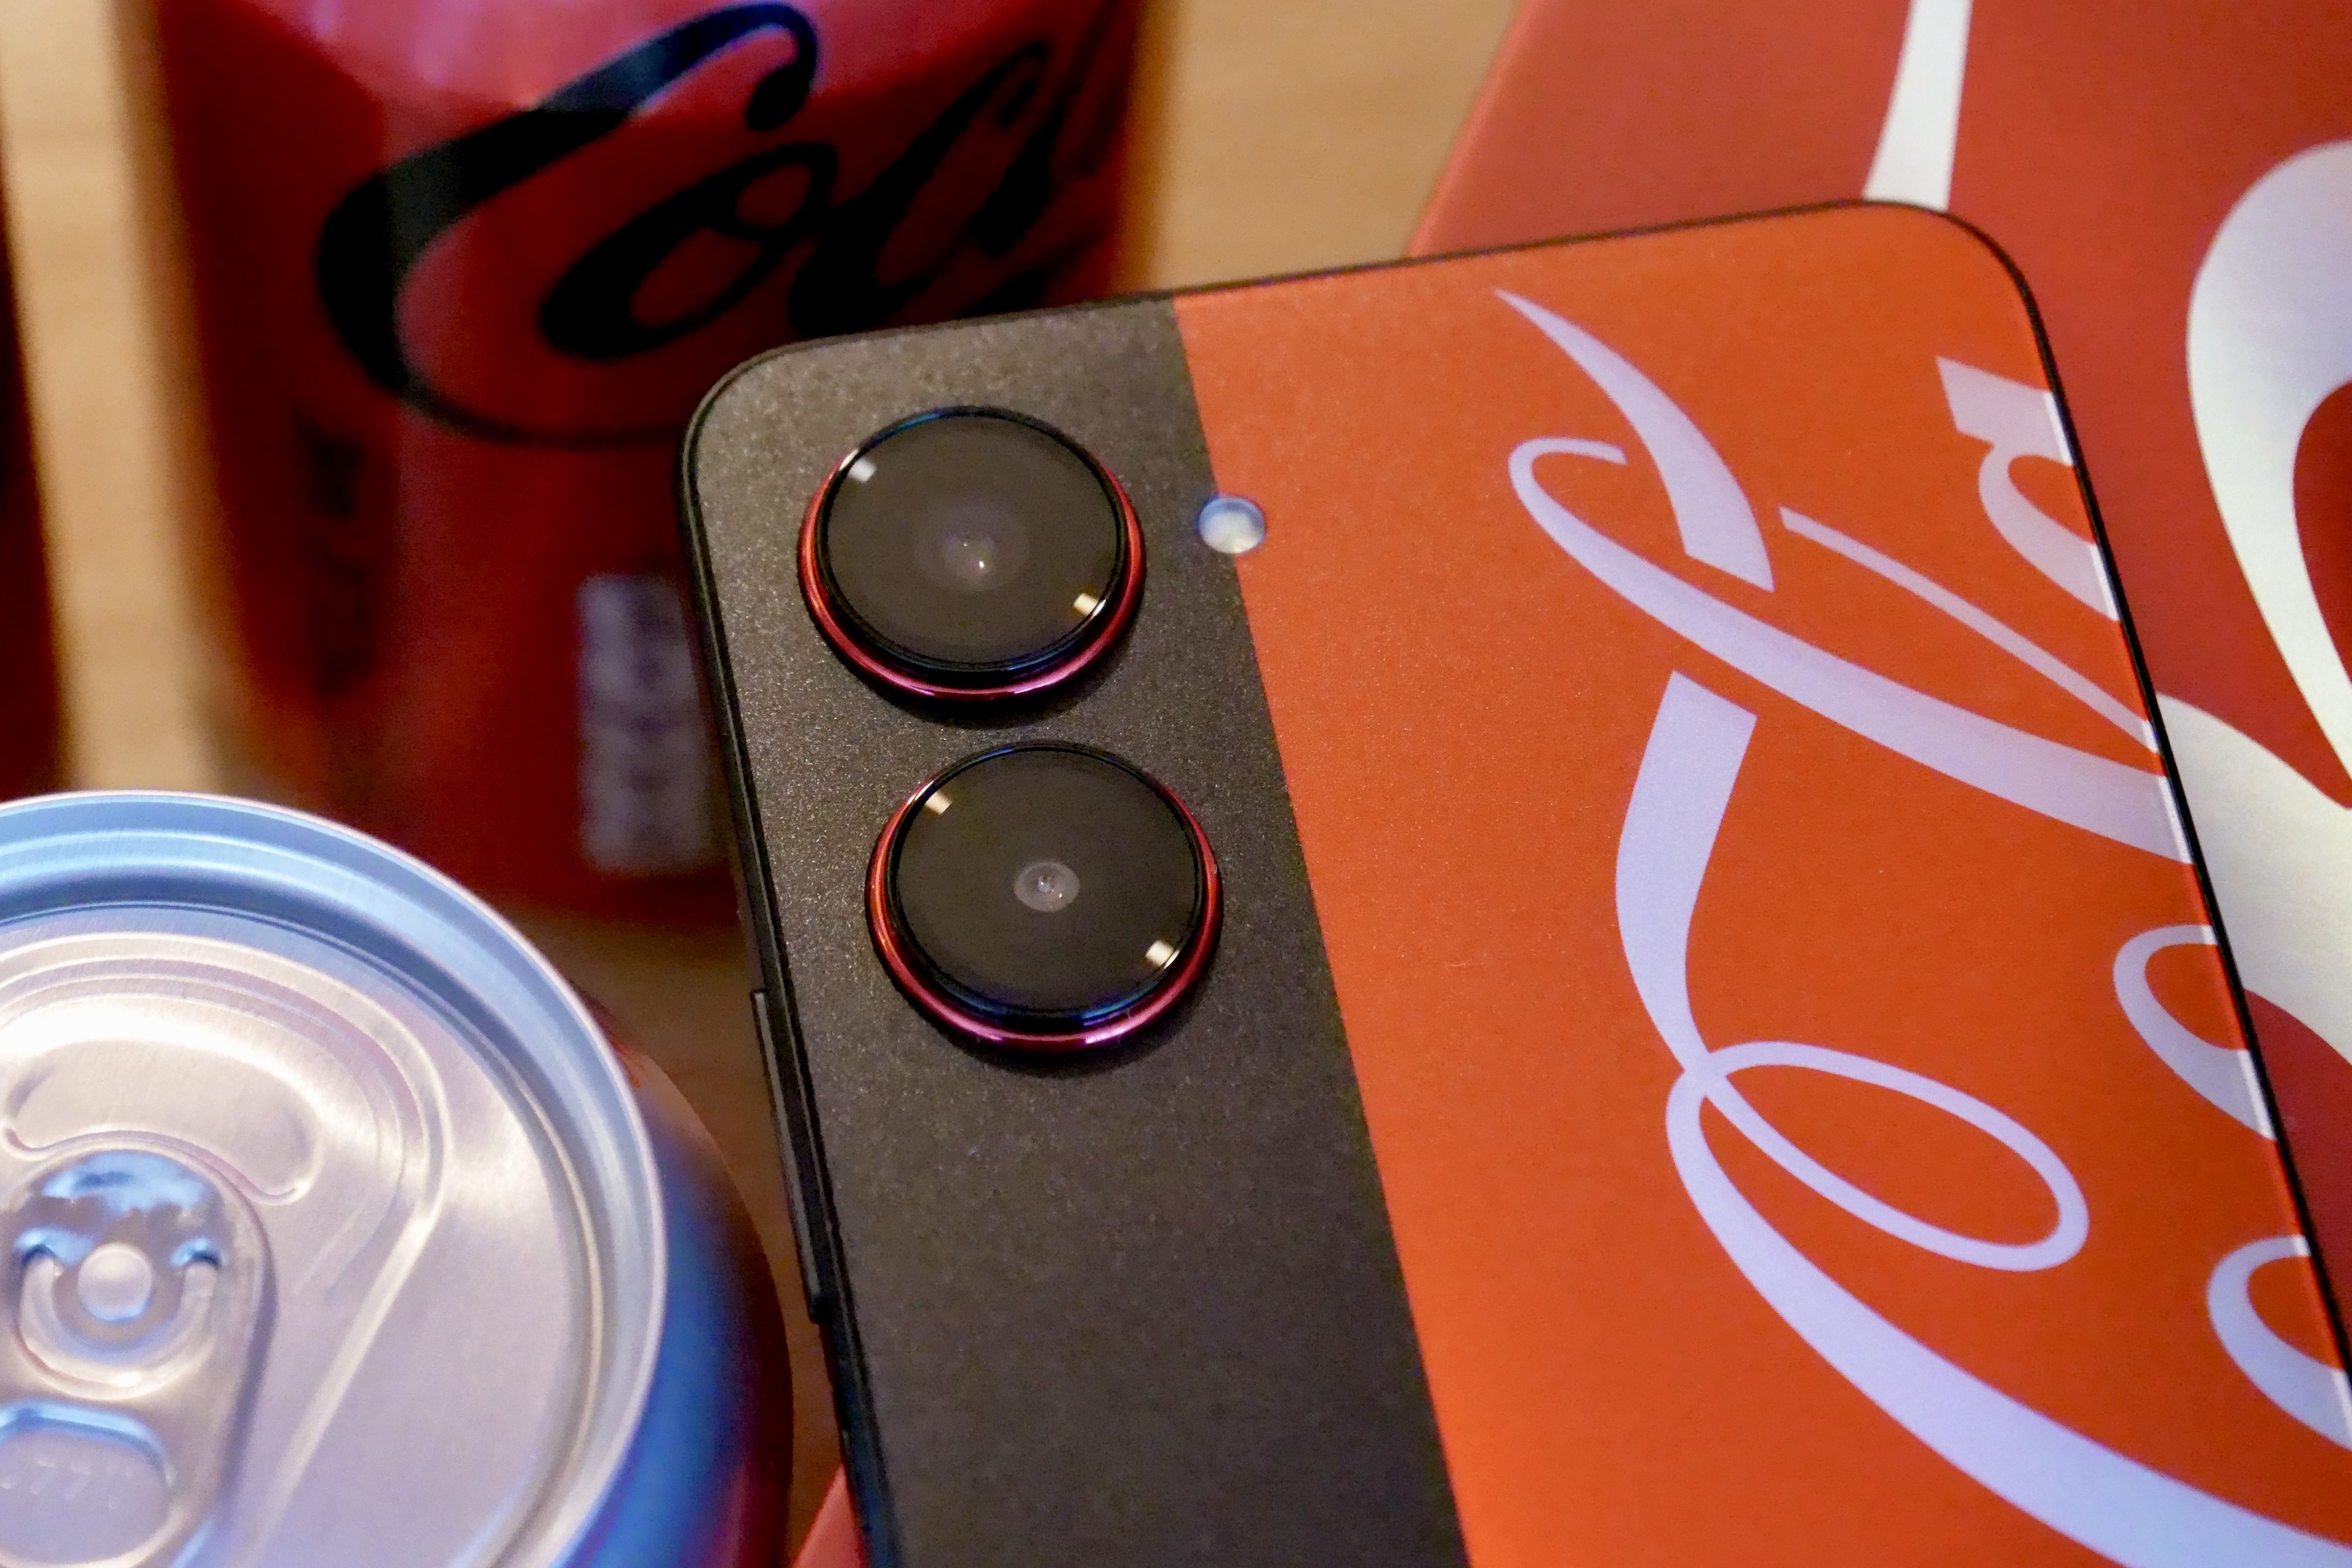 The Realme X Coca-Cola phone's camera module.